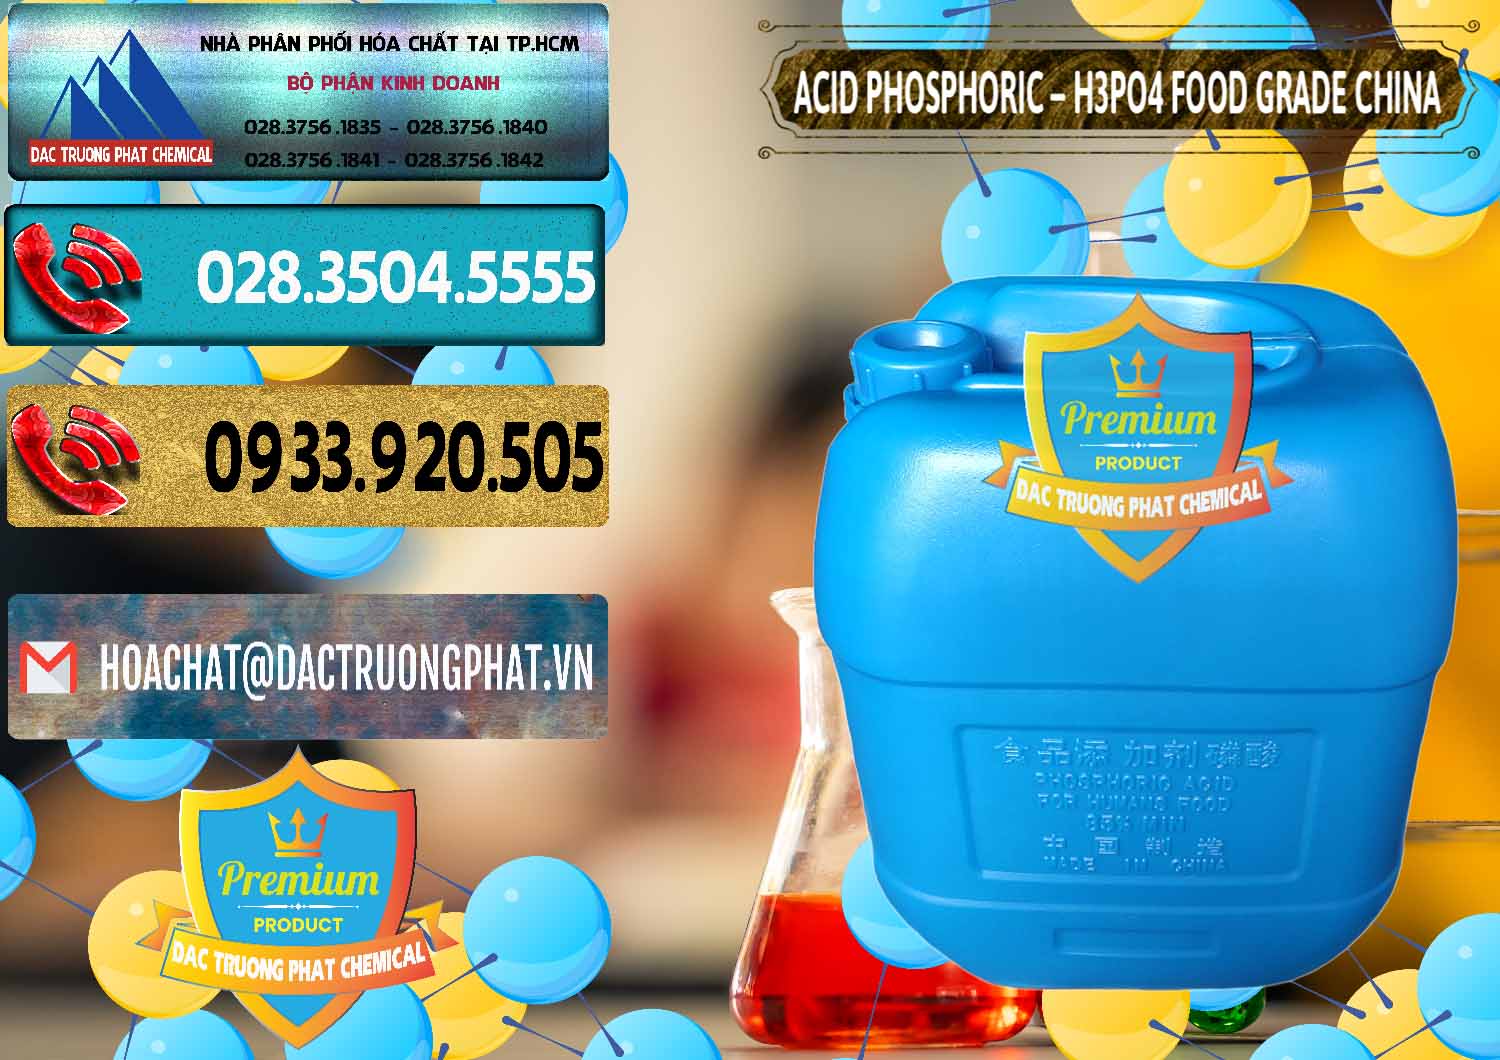 Cty chuyên bán ( cung cấp ) Acid Phosphoric – H3PO4 85% Food Grade Trung Quốc China - 0015 - Công ty chuyên phân phối ( nhập khẩu ) hóa chất tại TP.HCM - hoachatdetnhuom.com